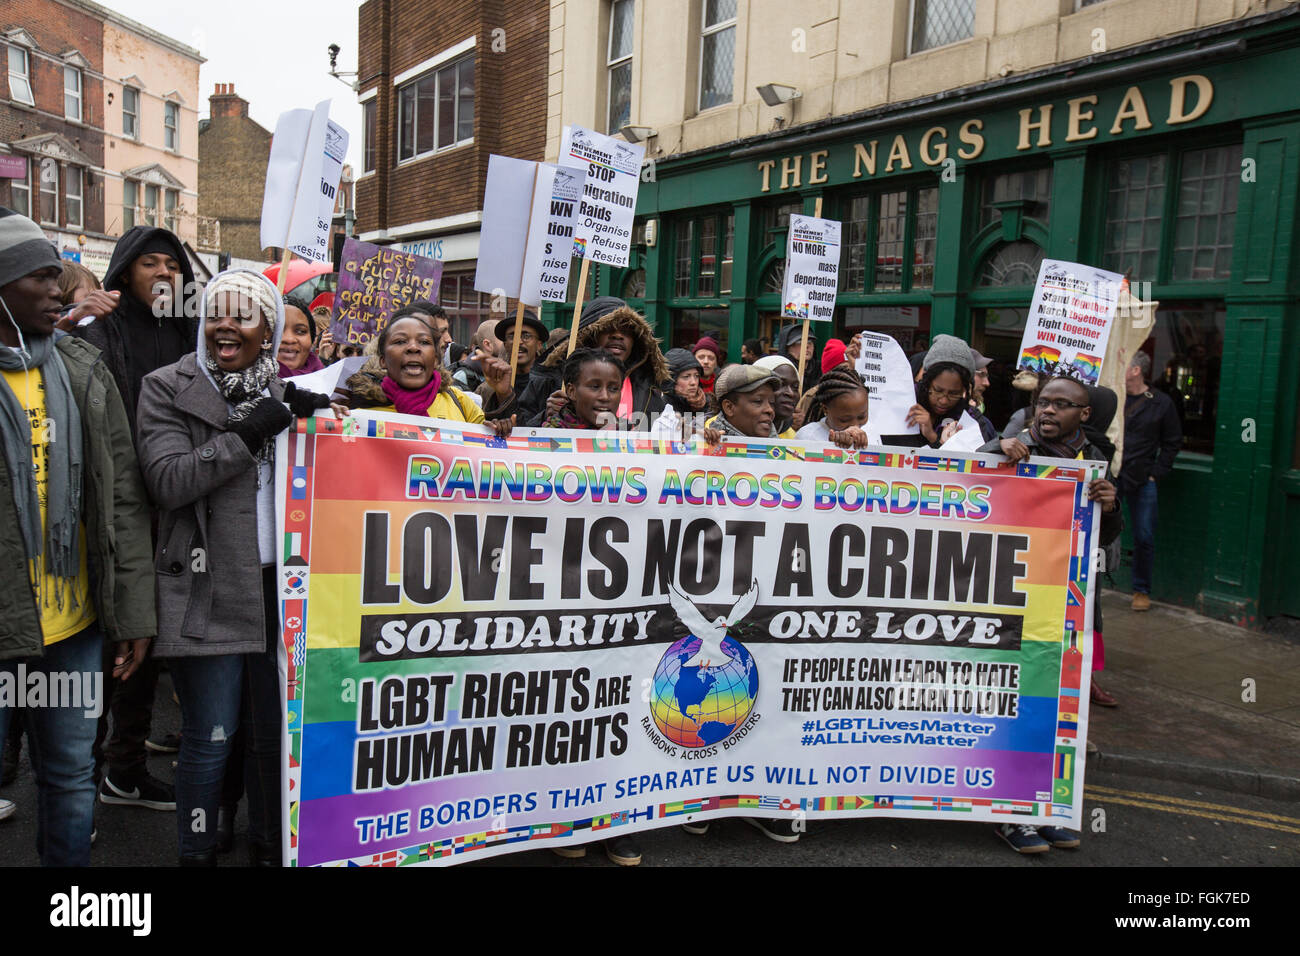 Peckham, Londres, 20 février 2016, 'l'amour n'est pas un crime" la fierté communautaire mars passant le Nags Head à Peckham. Crédit : David Rowe/Alamy Live News Banque D'Images